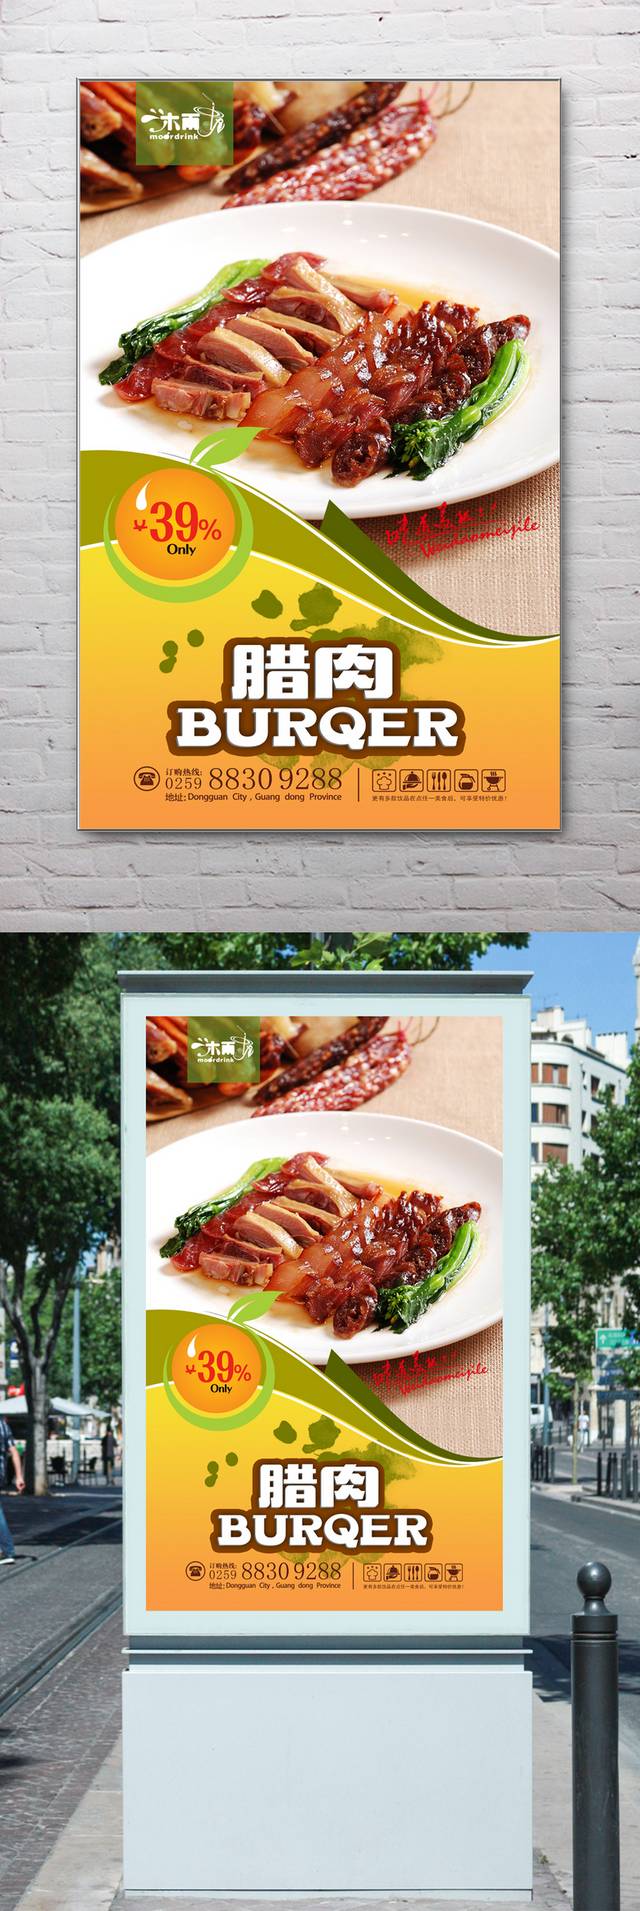 通用腊肉宣传海报设计